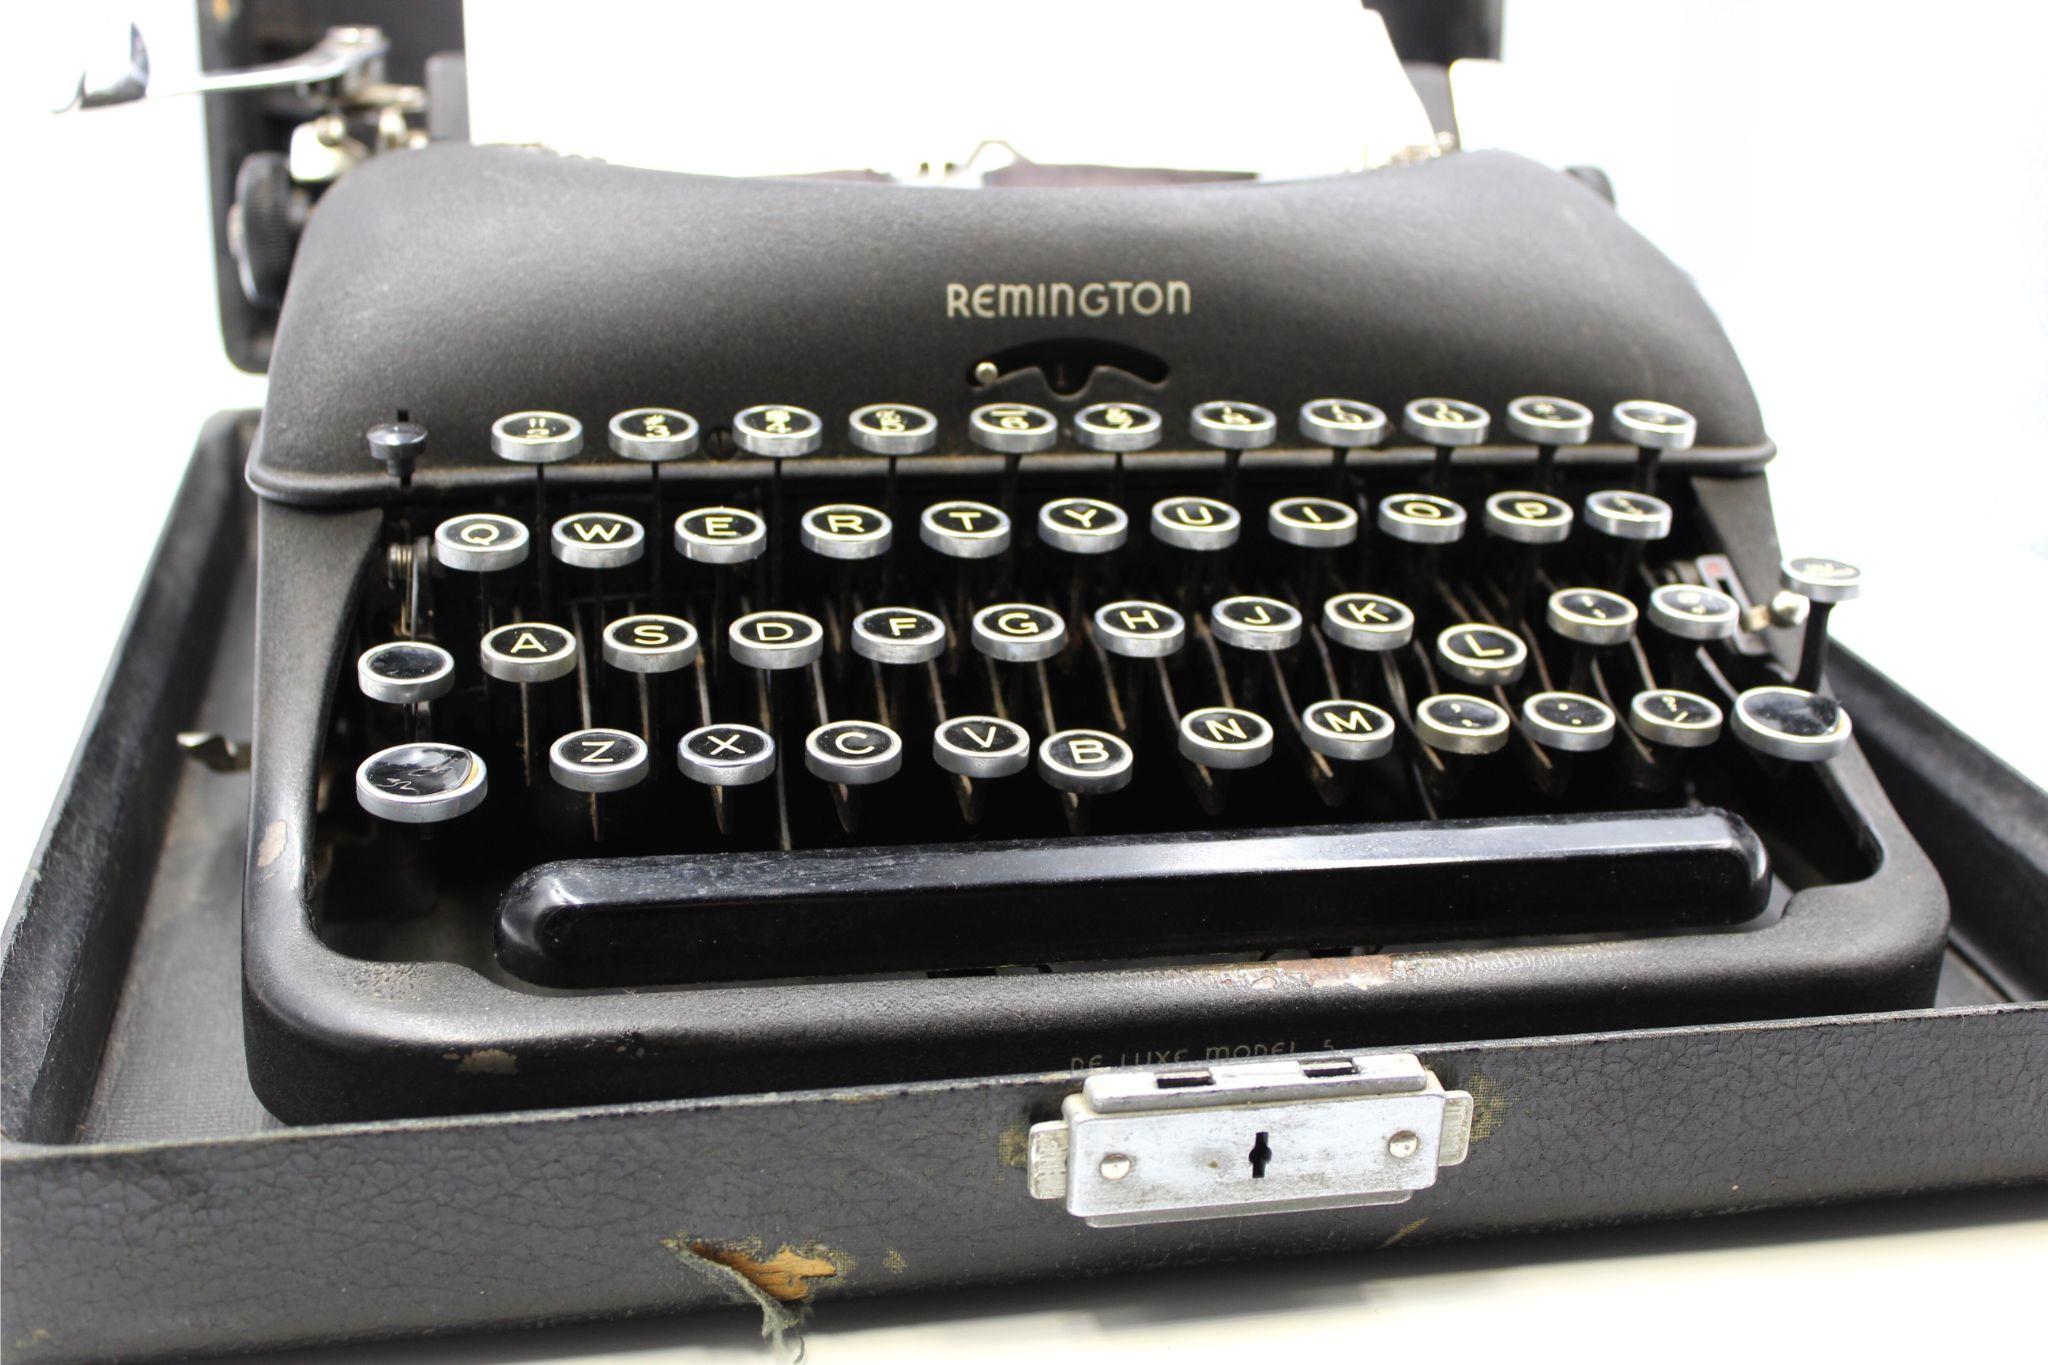 remington rand portable typewriter